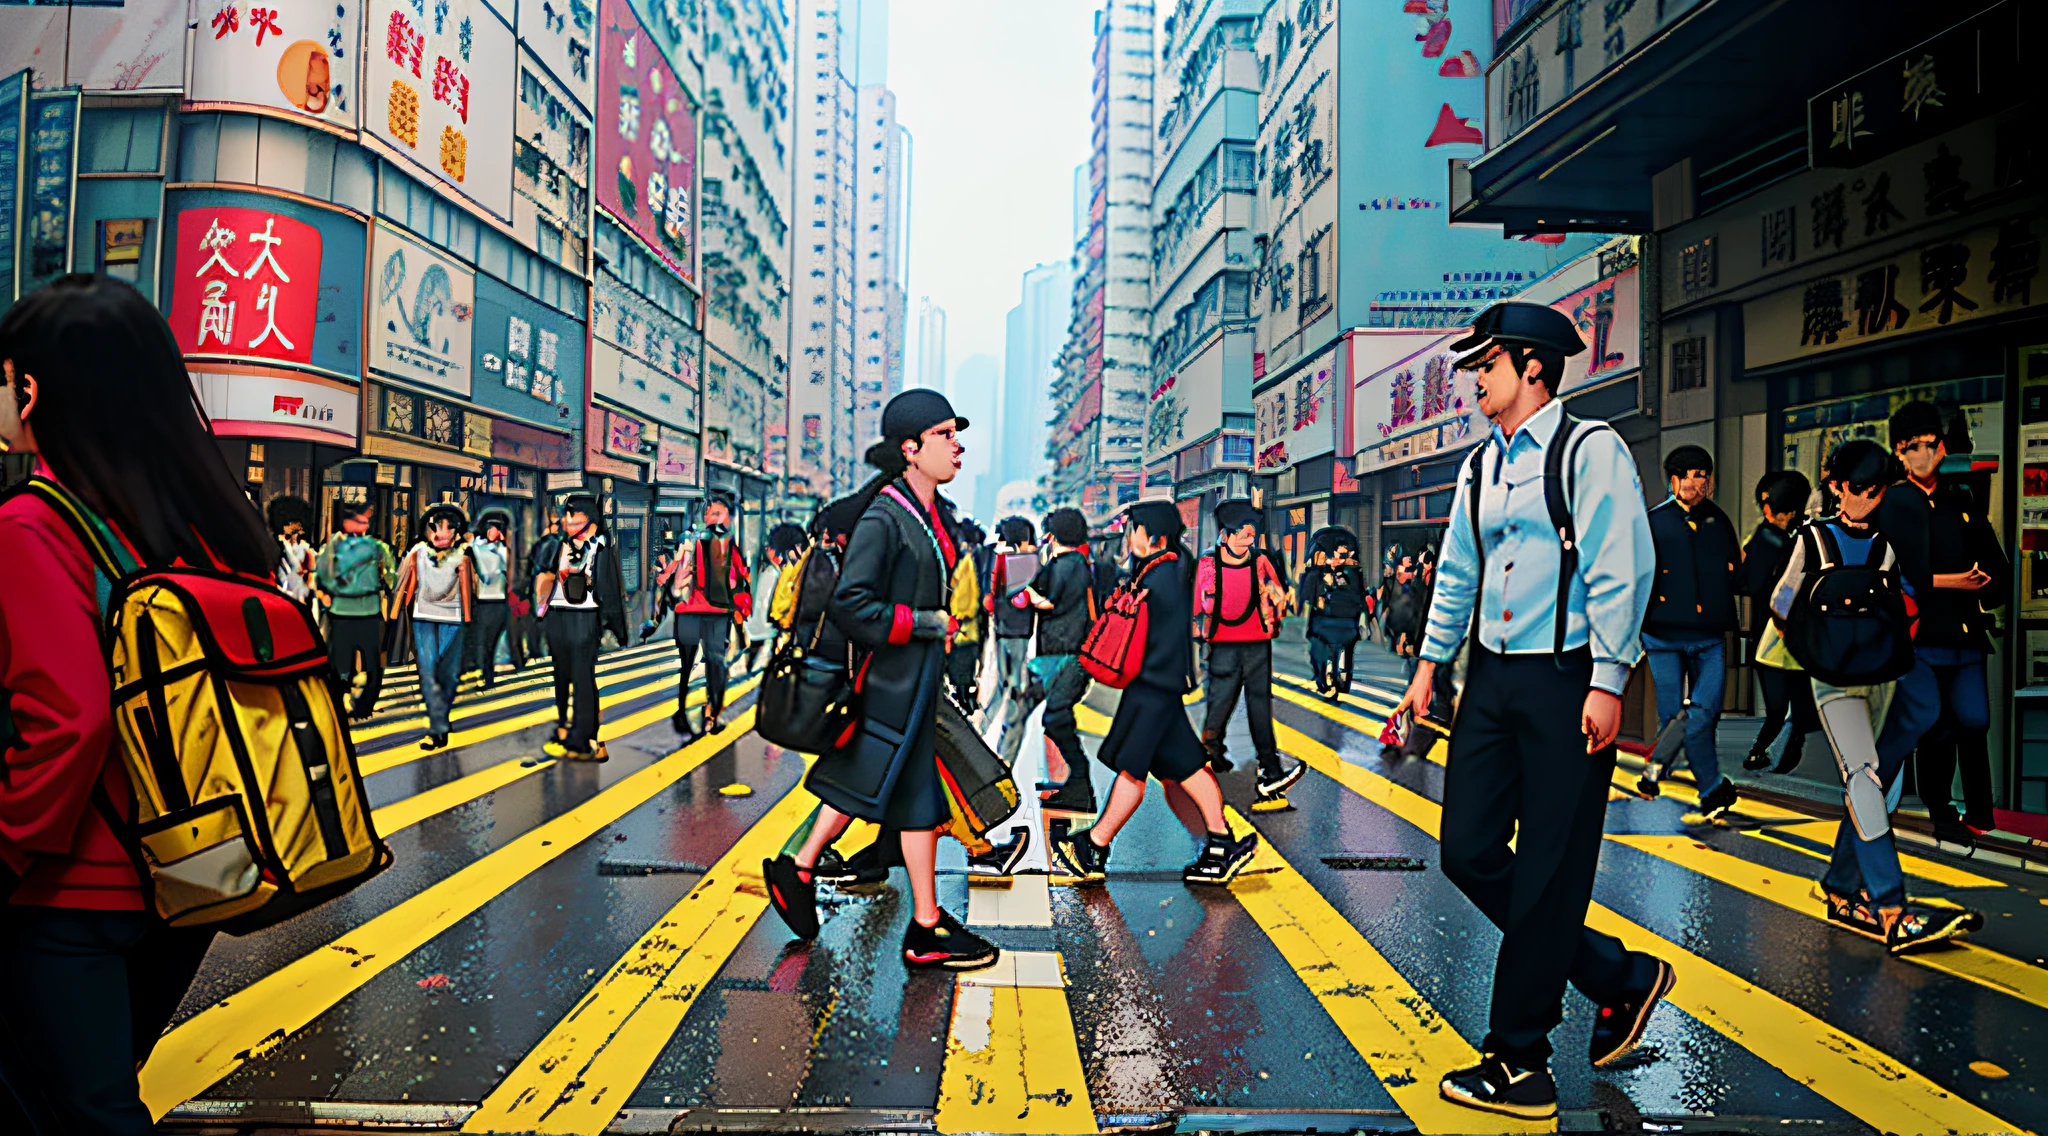 pessoas caminhando através de uma faixa de pedestres em uma rua movimentada da cidade, pessoas andando por uma rua, ruas de Hong Kong, pessoas andando na rua, rua movimentadas, pessoas andando na rua, viajantes andando pelas ruas, rua movimentadas filled with people, rua de Hong Kong, rua movimentada, rua movimentada, rua movimentadas, pessoas nas ruas, pessoas andando por aí, pessoas nas ruas